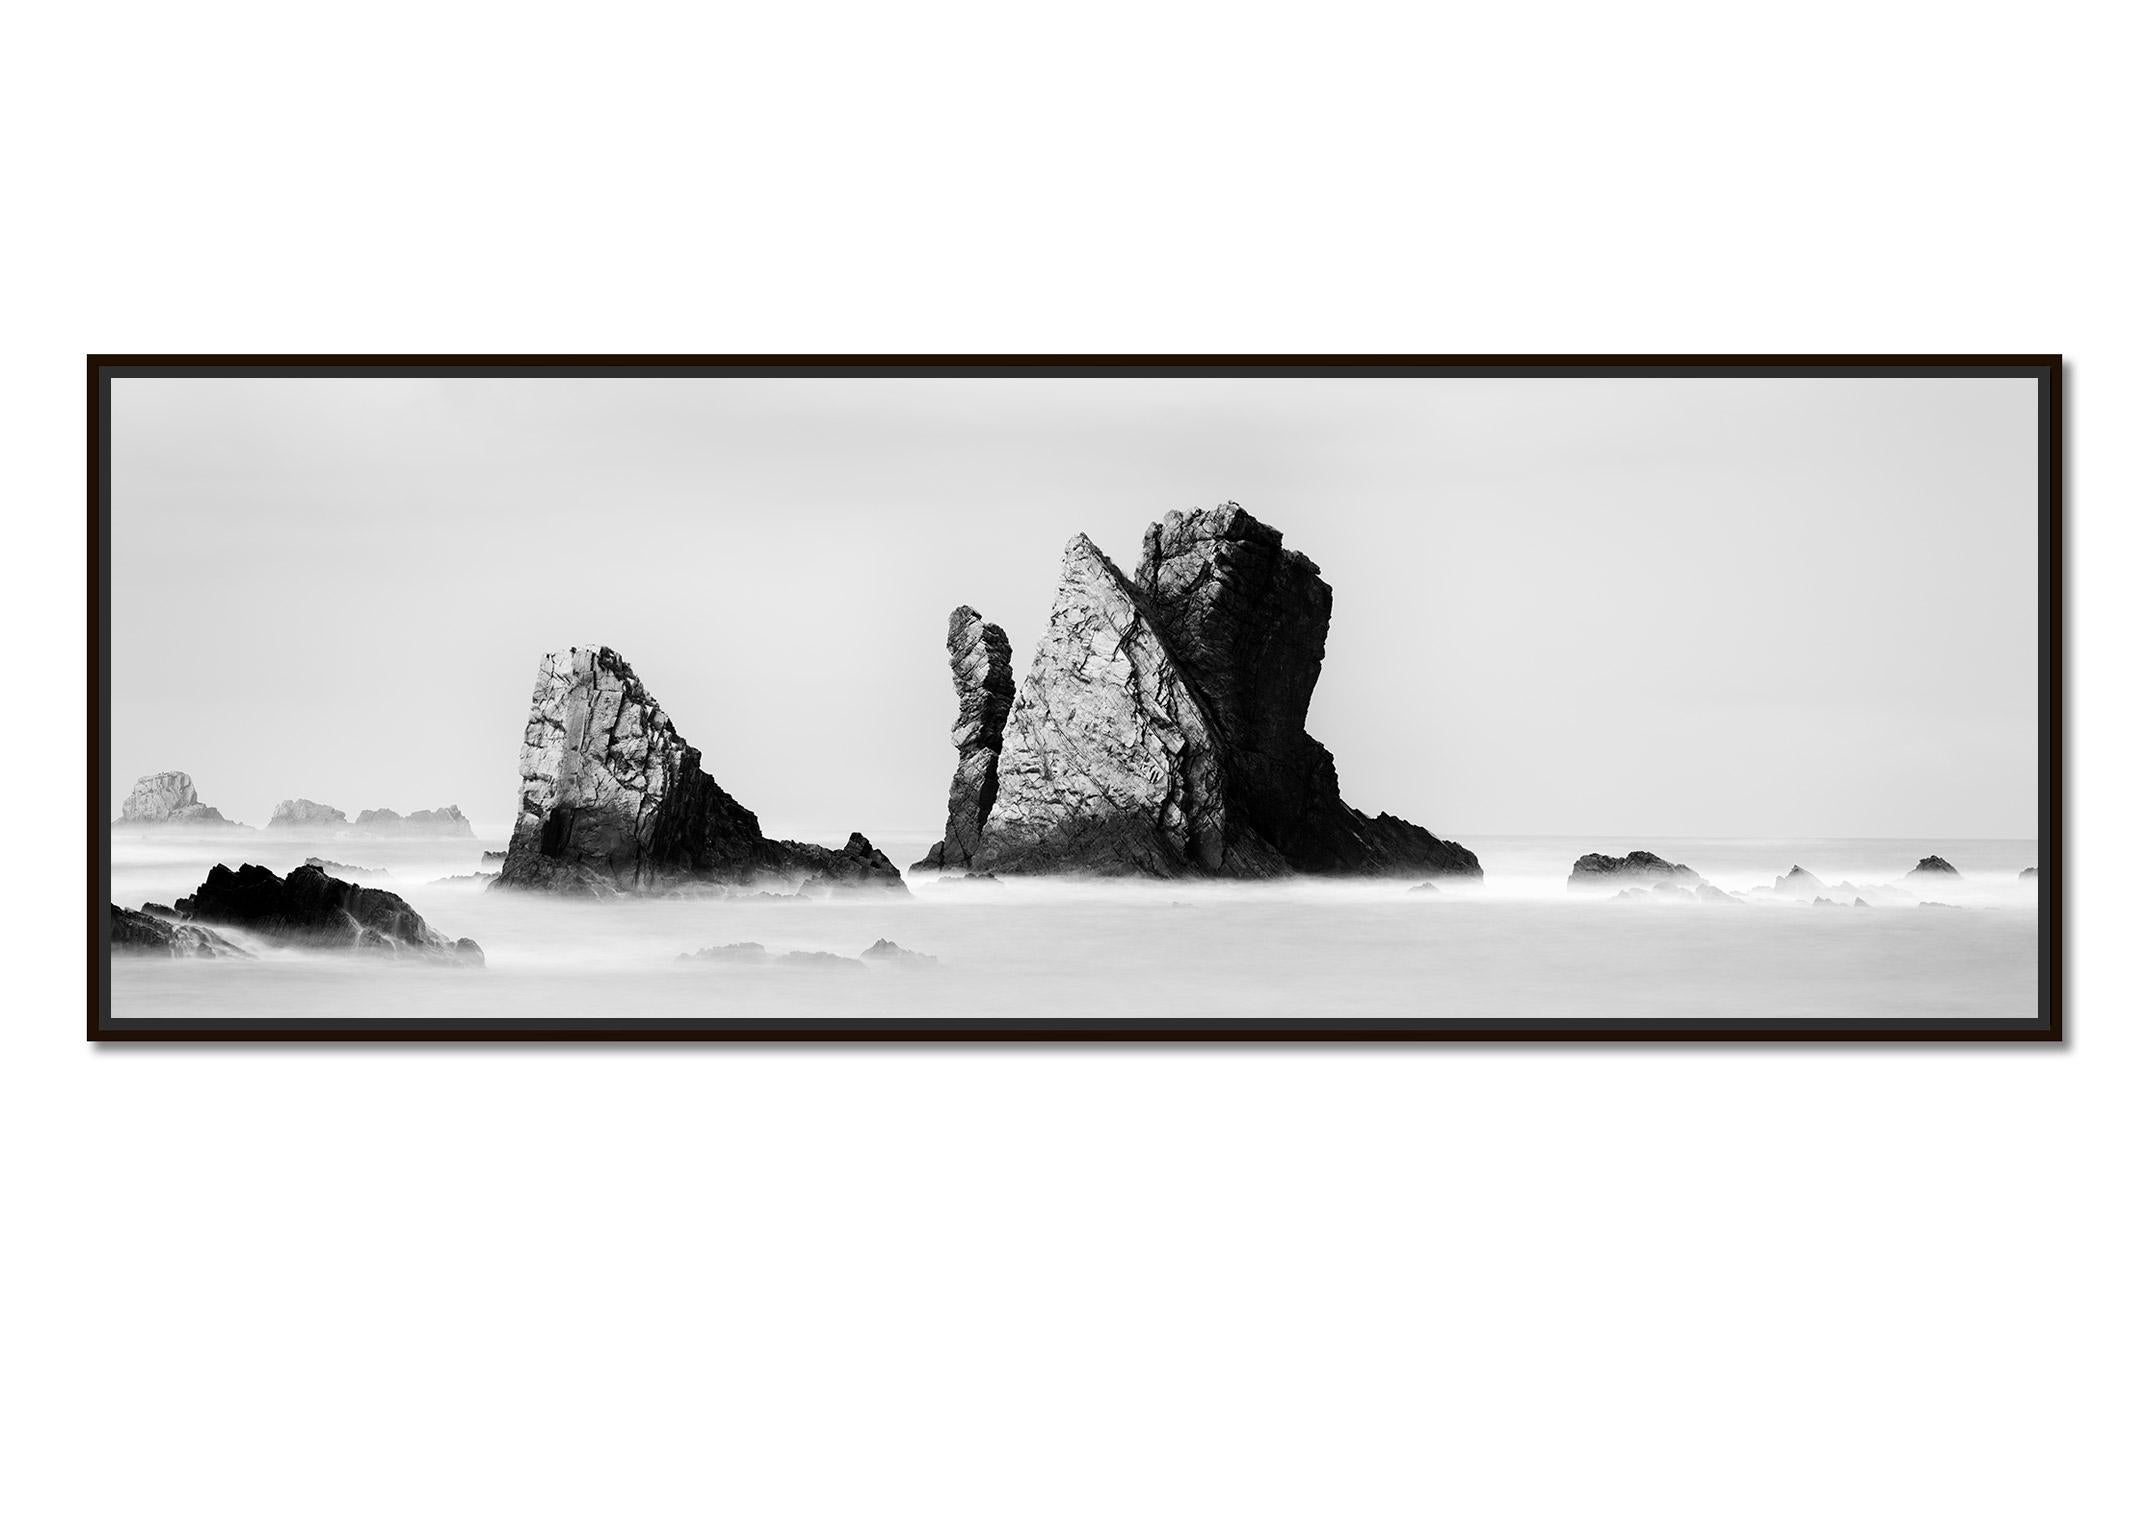 Plage de Silencio Panarama, Espagne, minimal fine art, photographie en noir et blanc - Photograph de Gerald Berghammer